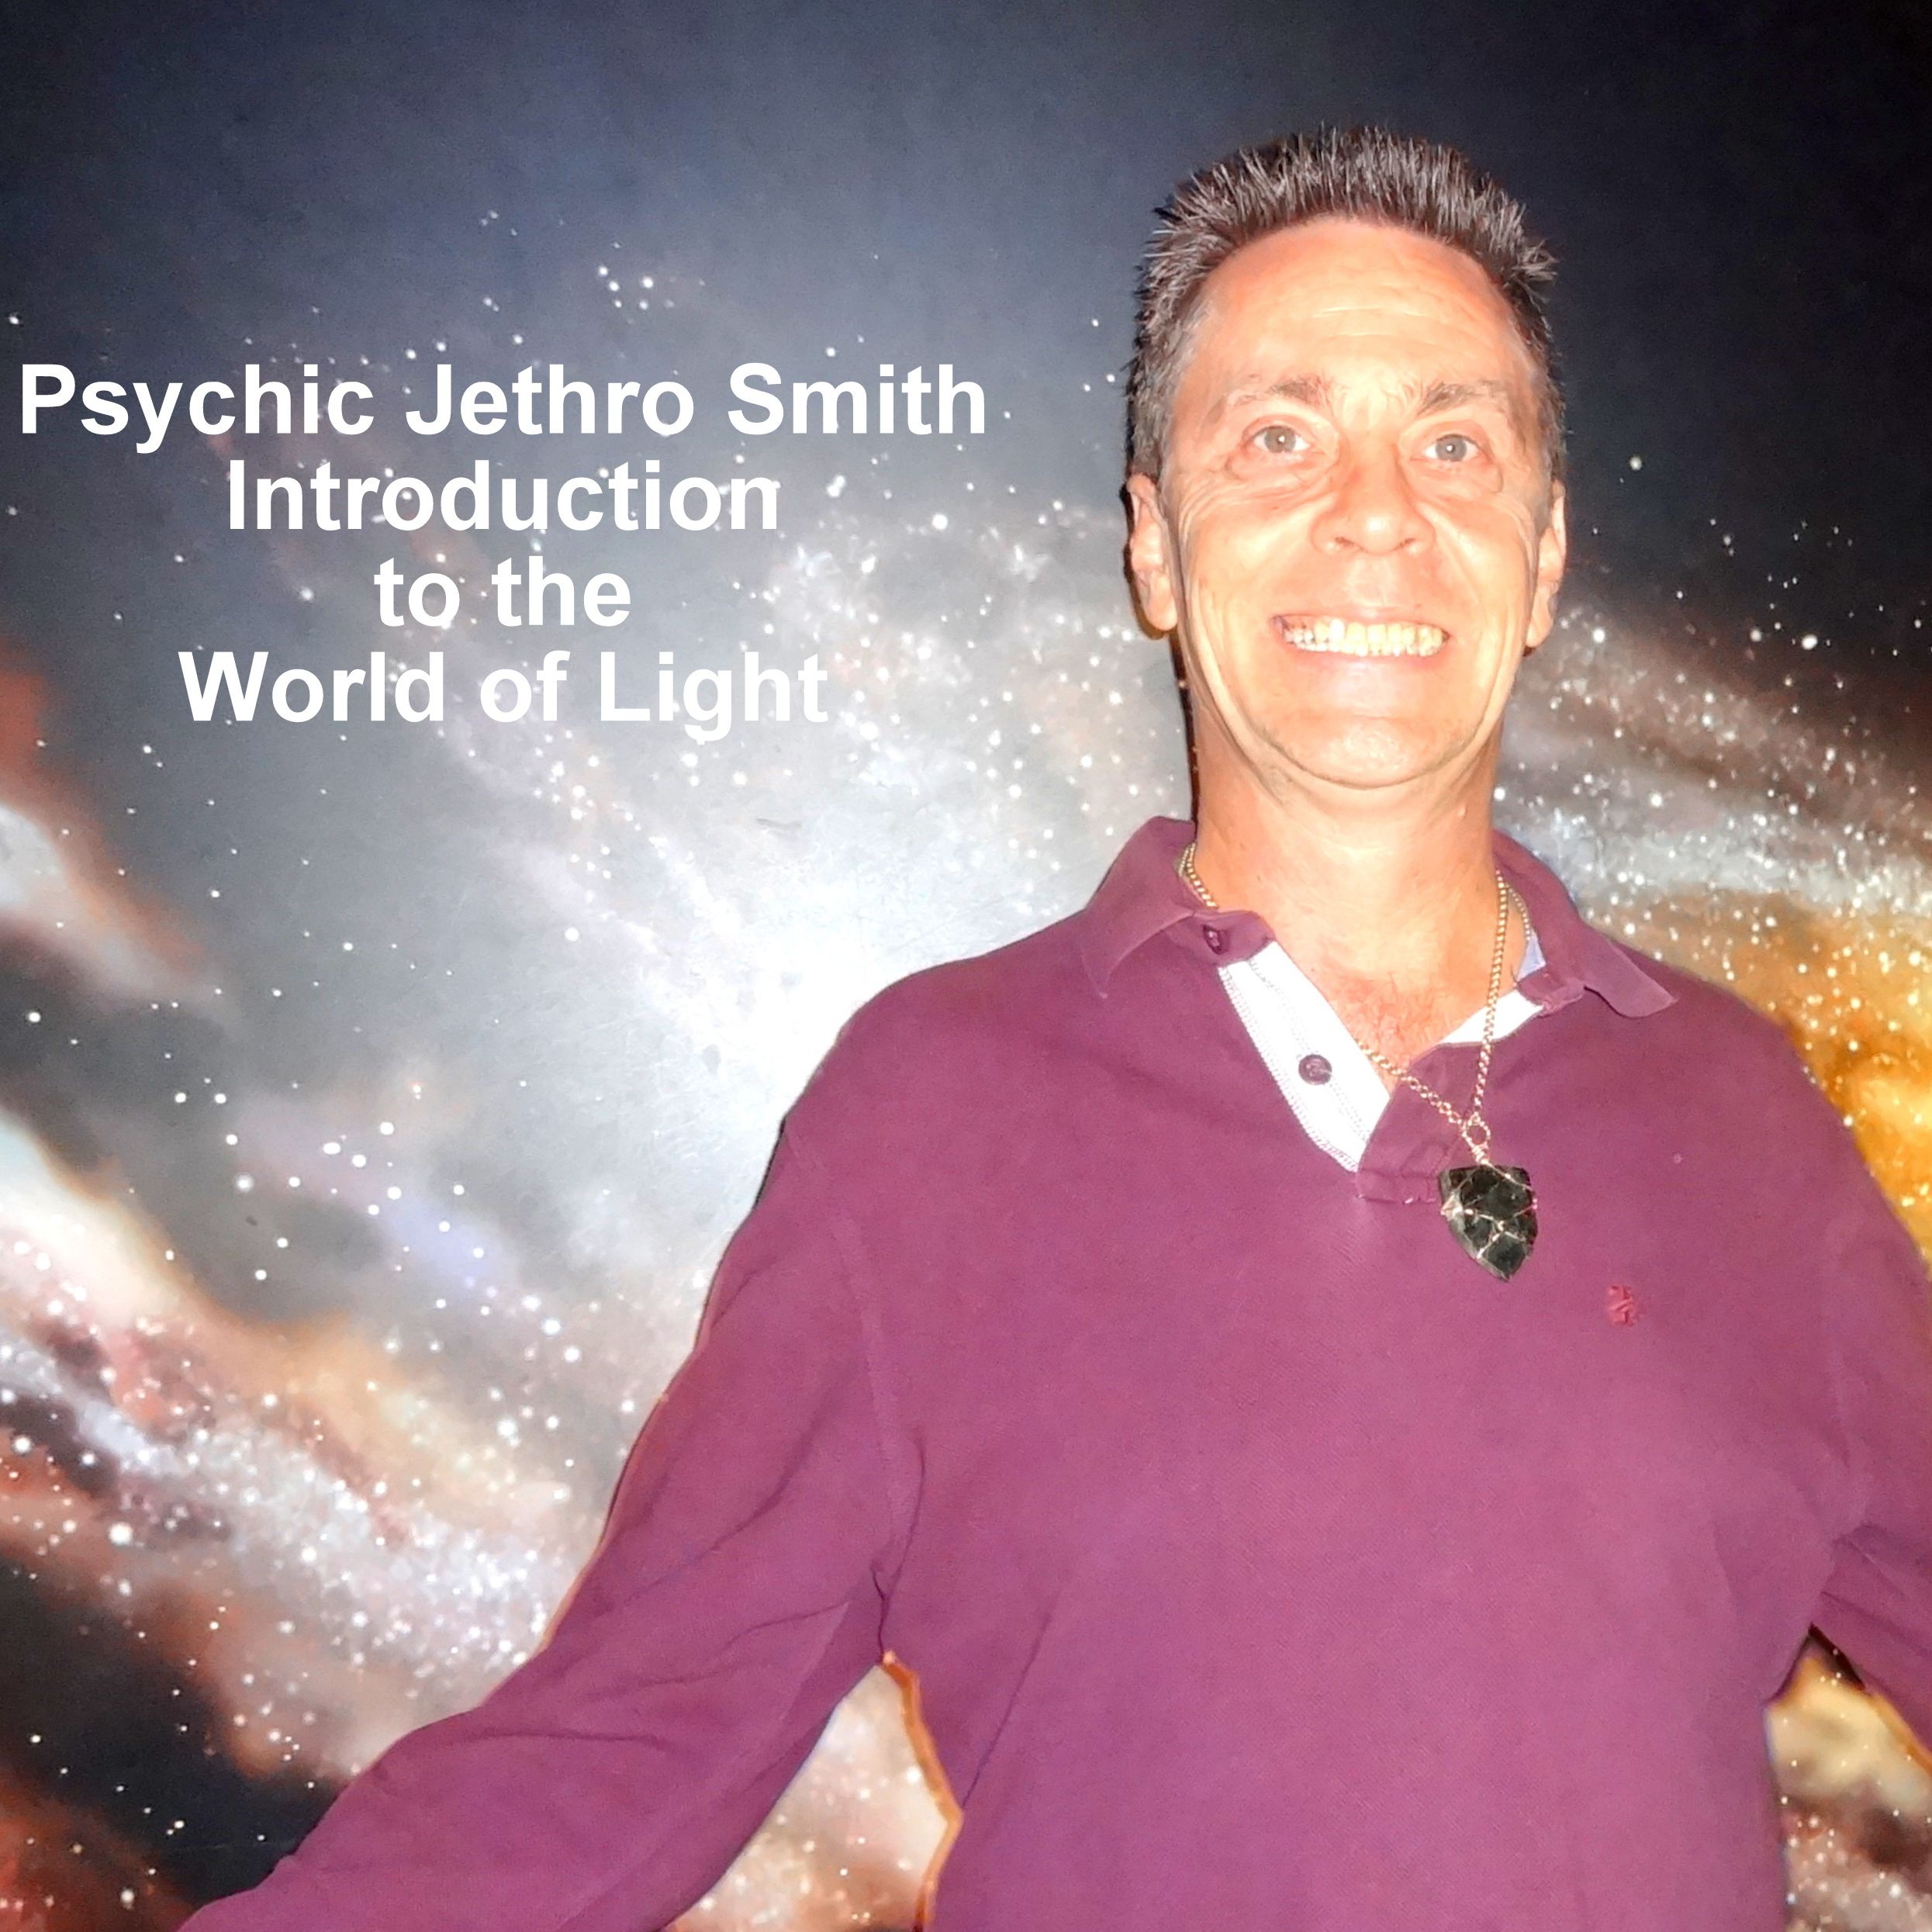 Psychic Jethro Smith